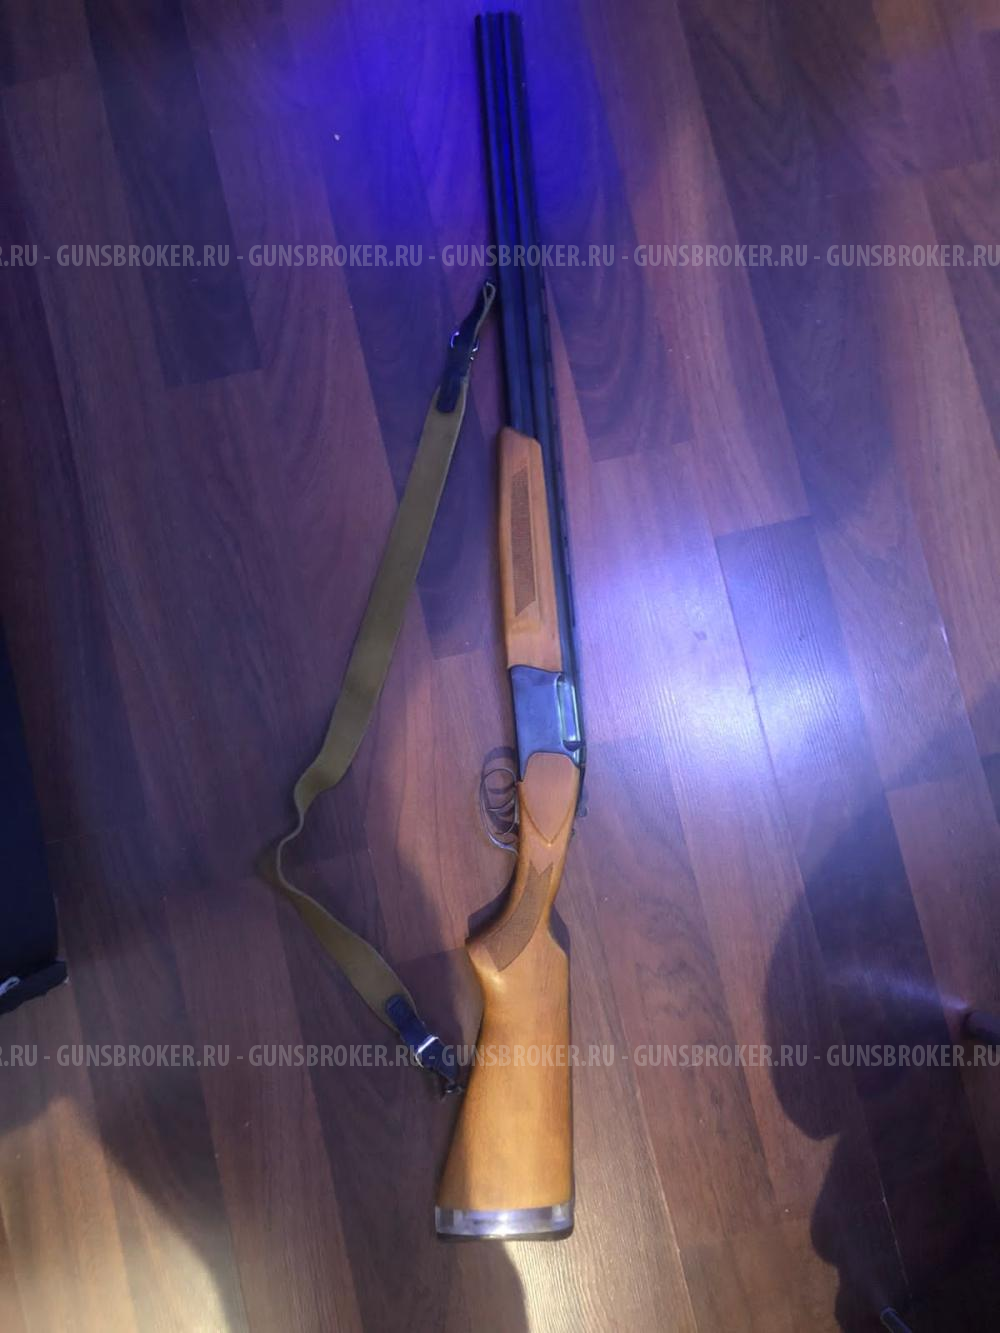 Охотничье огнестрельное гладкоствольное длинноствольное оружие марки «ИЖ-27ЕМ», кал. 12х70 мм, № 9460390